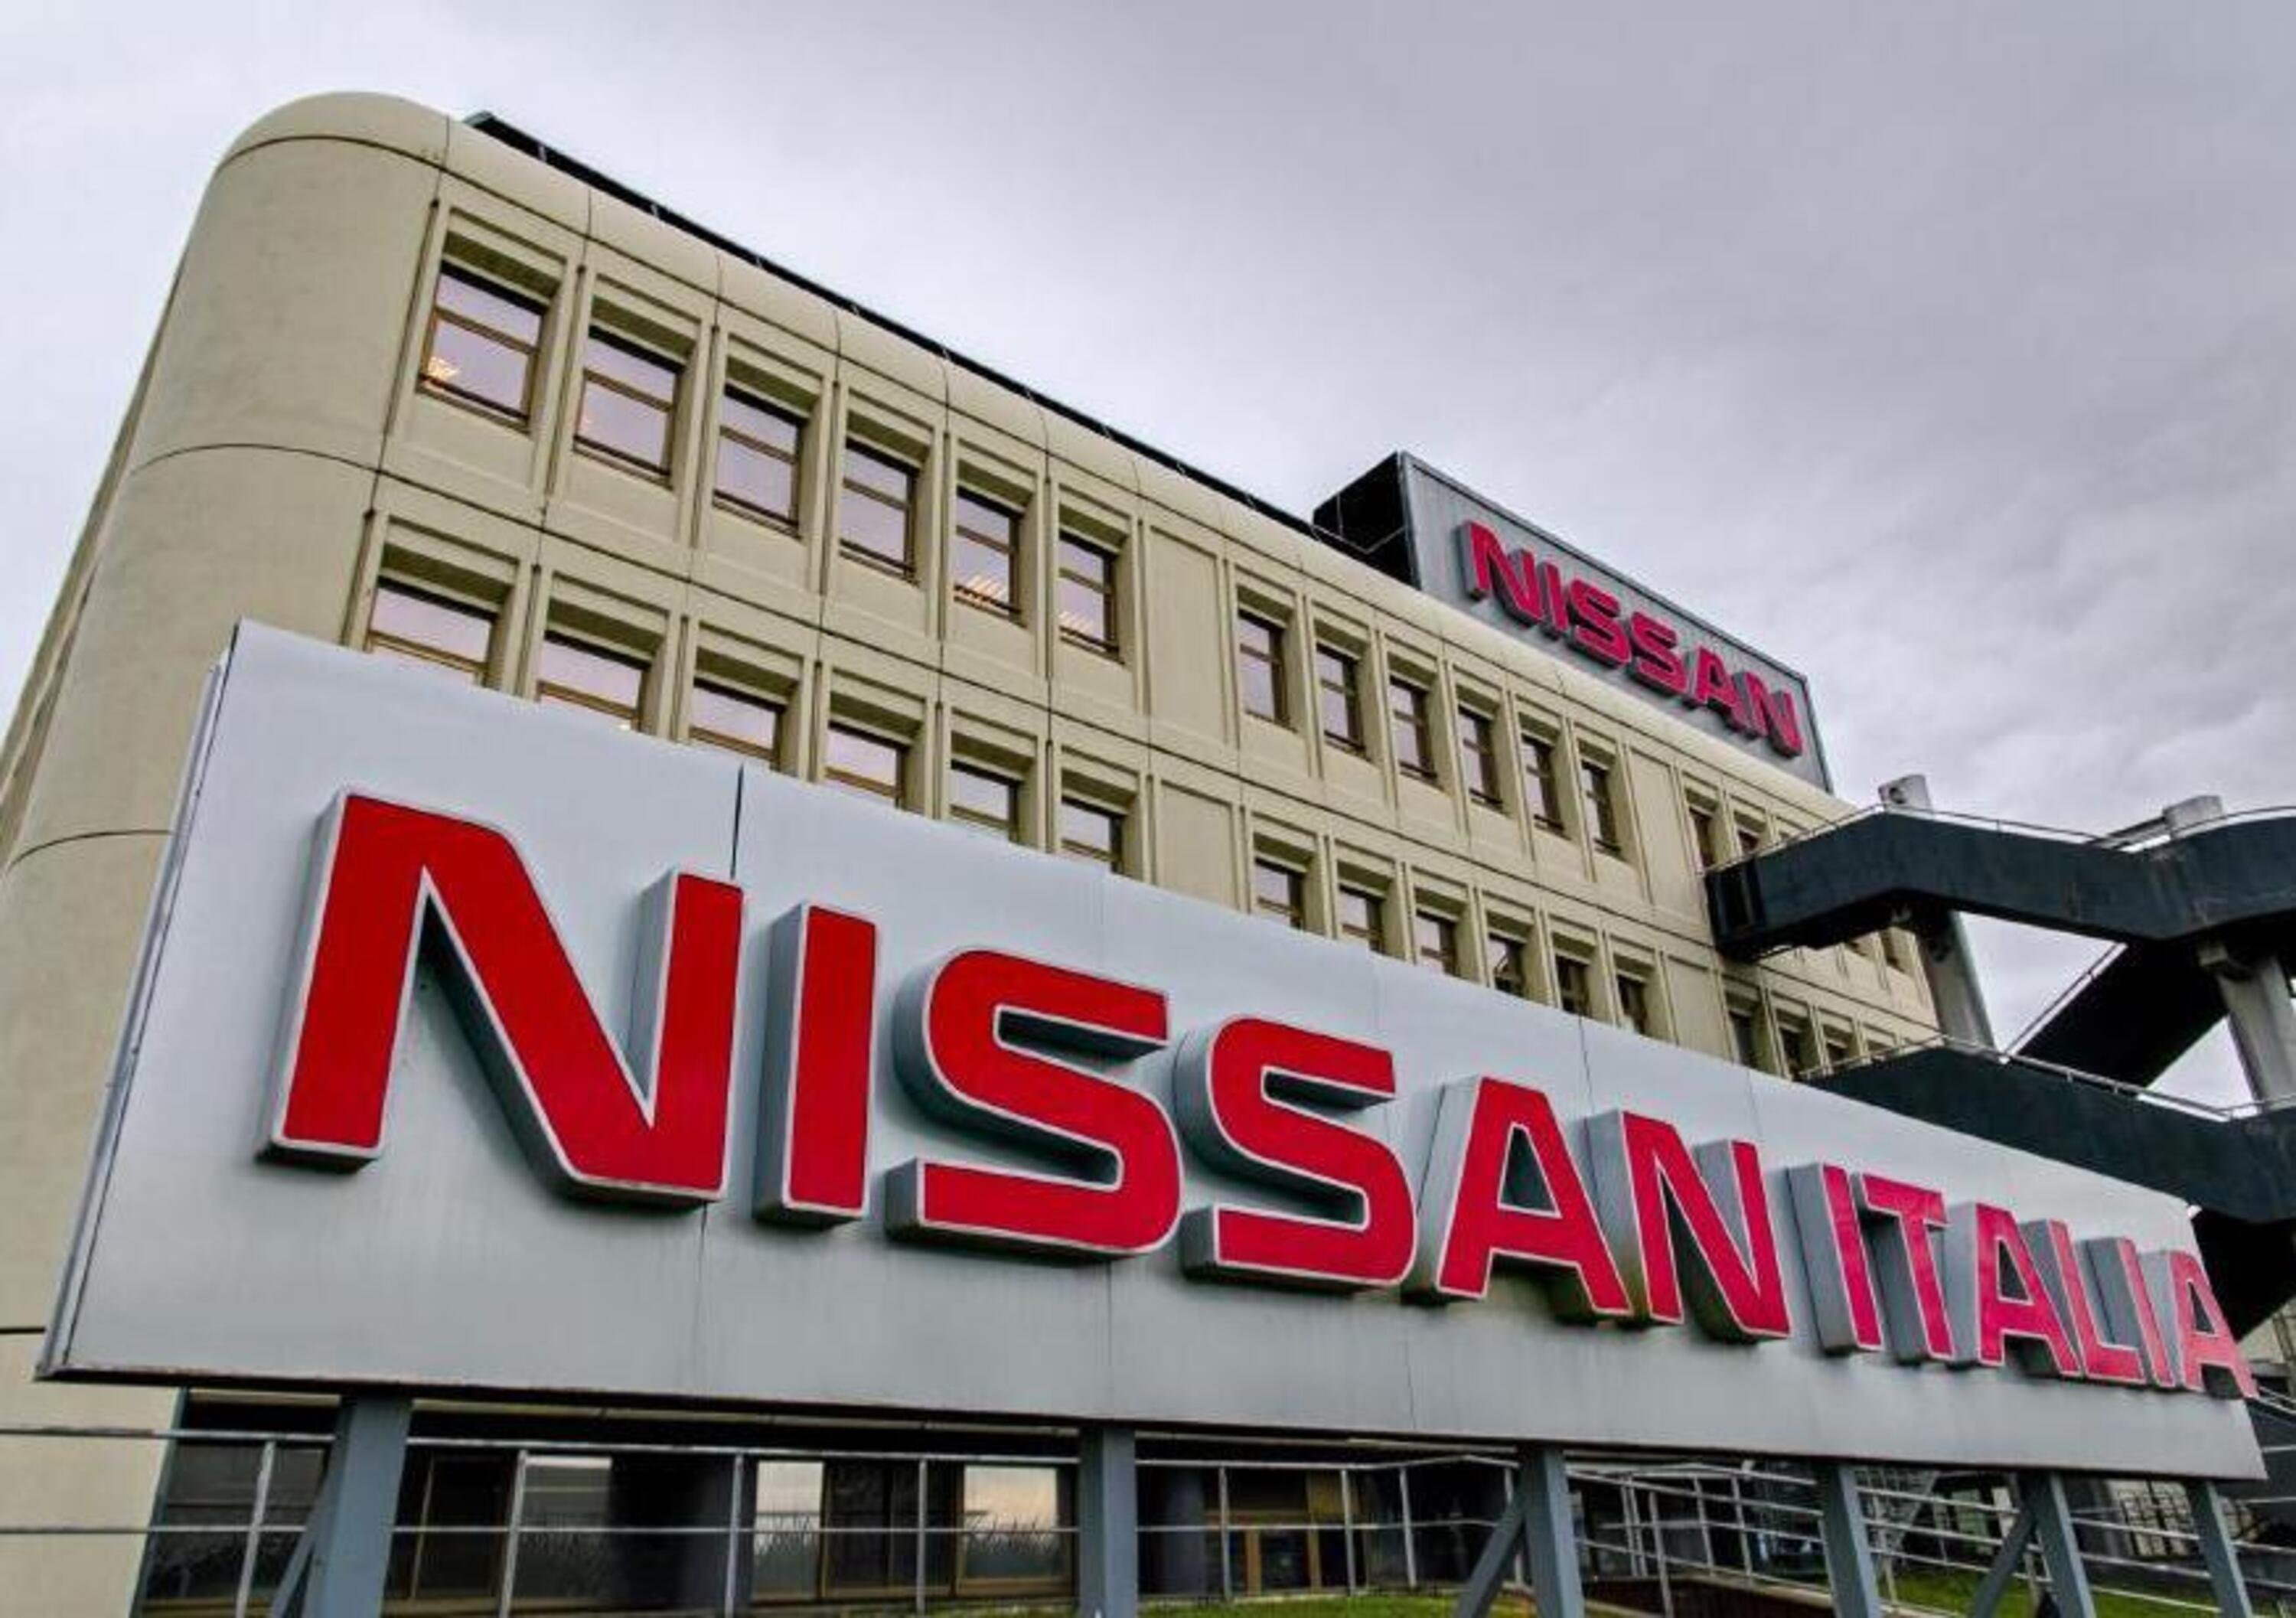 Nissan offre assistenza gratuita ai mezzi di medici e infermieri